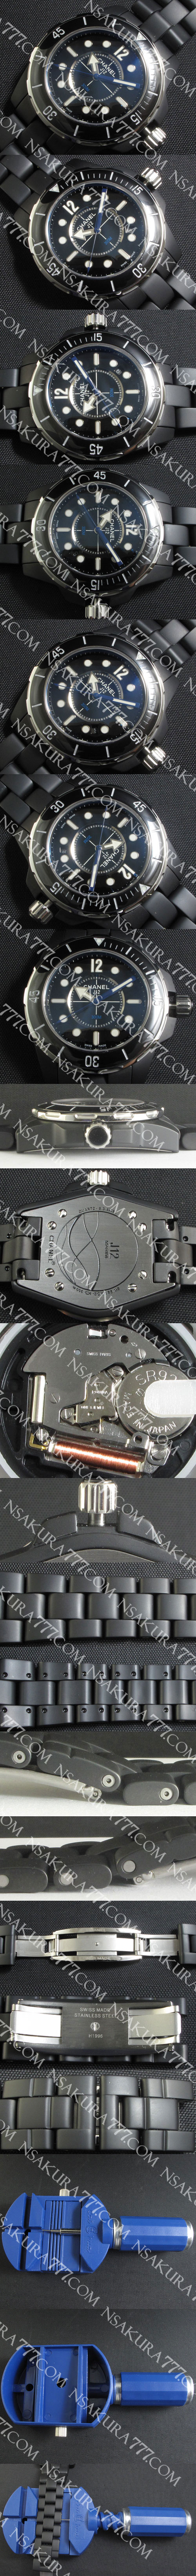 レプリカ時計シャネルJ12マリン 34mm スイス RONDA クォーツムーブメント搭載 [レディース] - ウインドウを閉じる